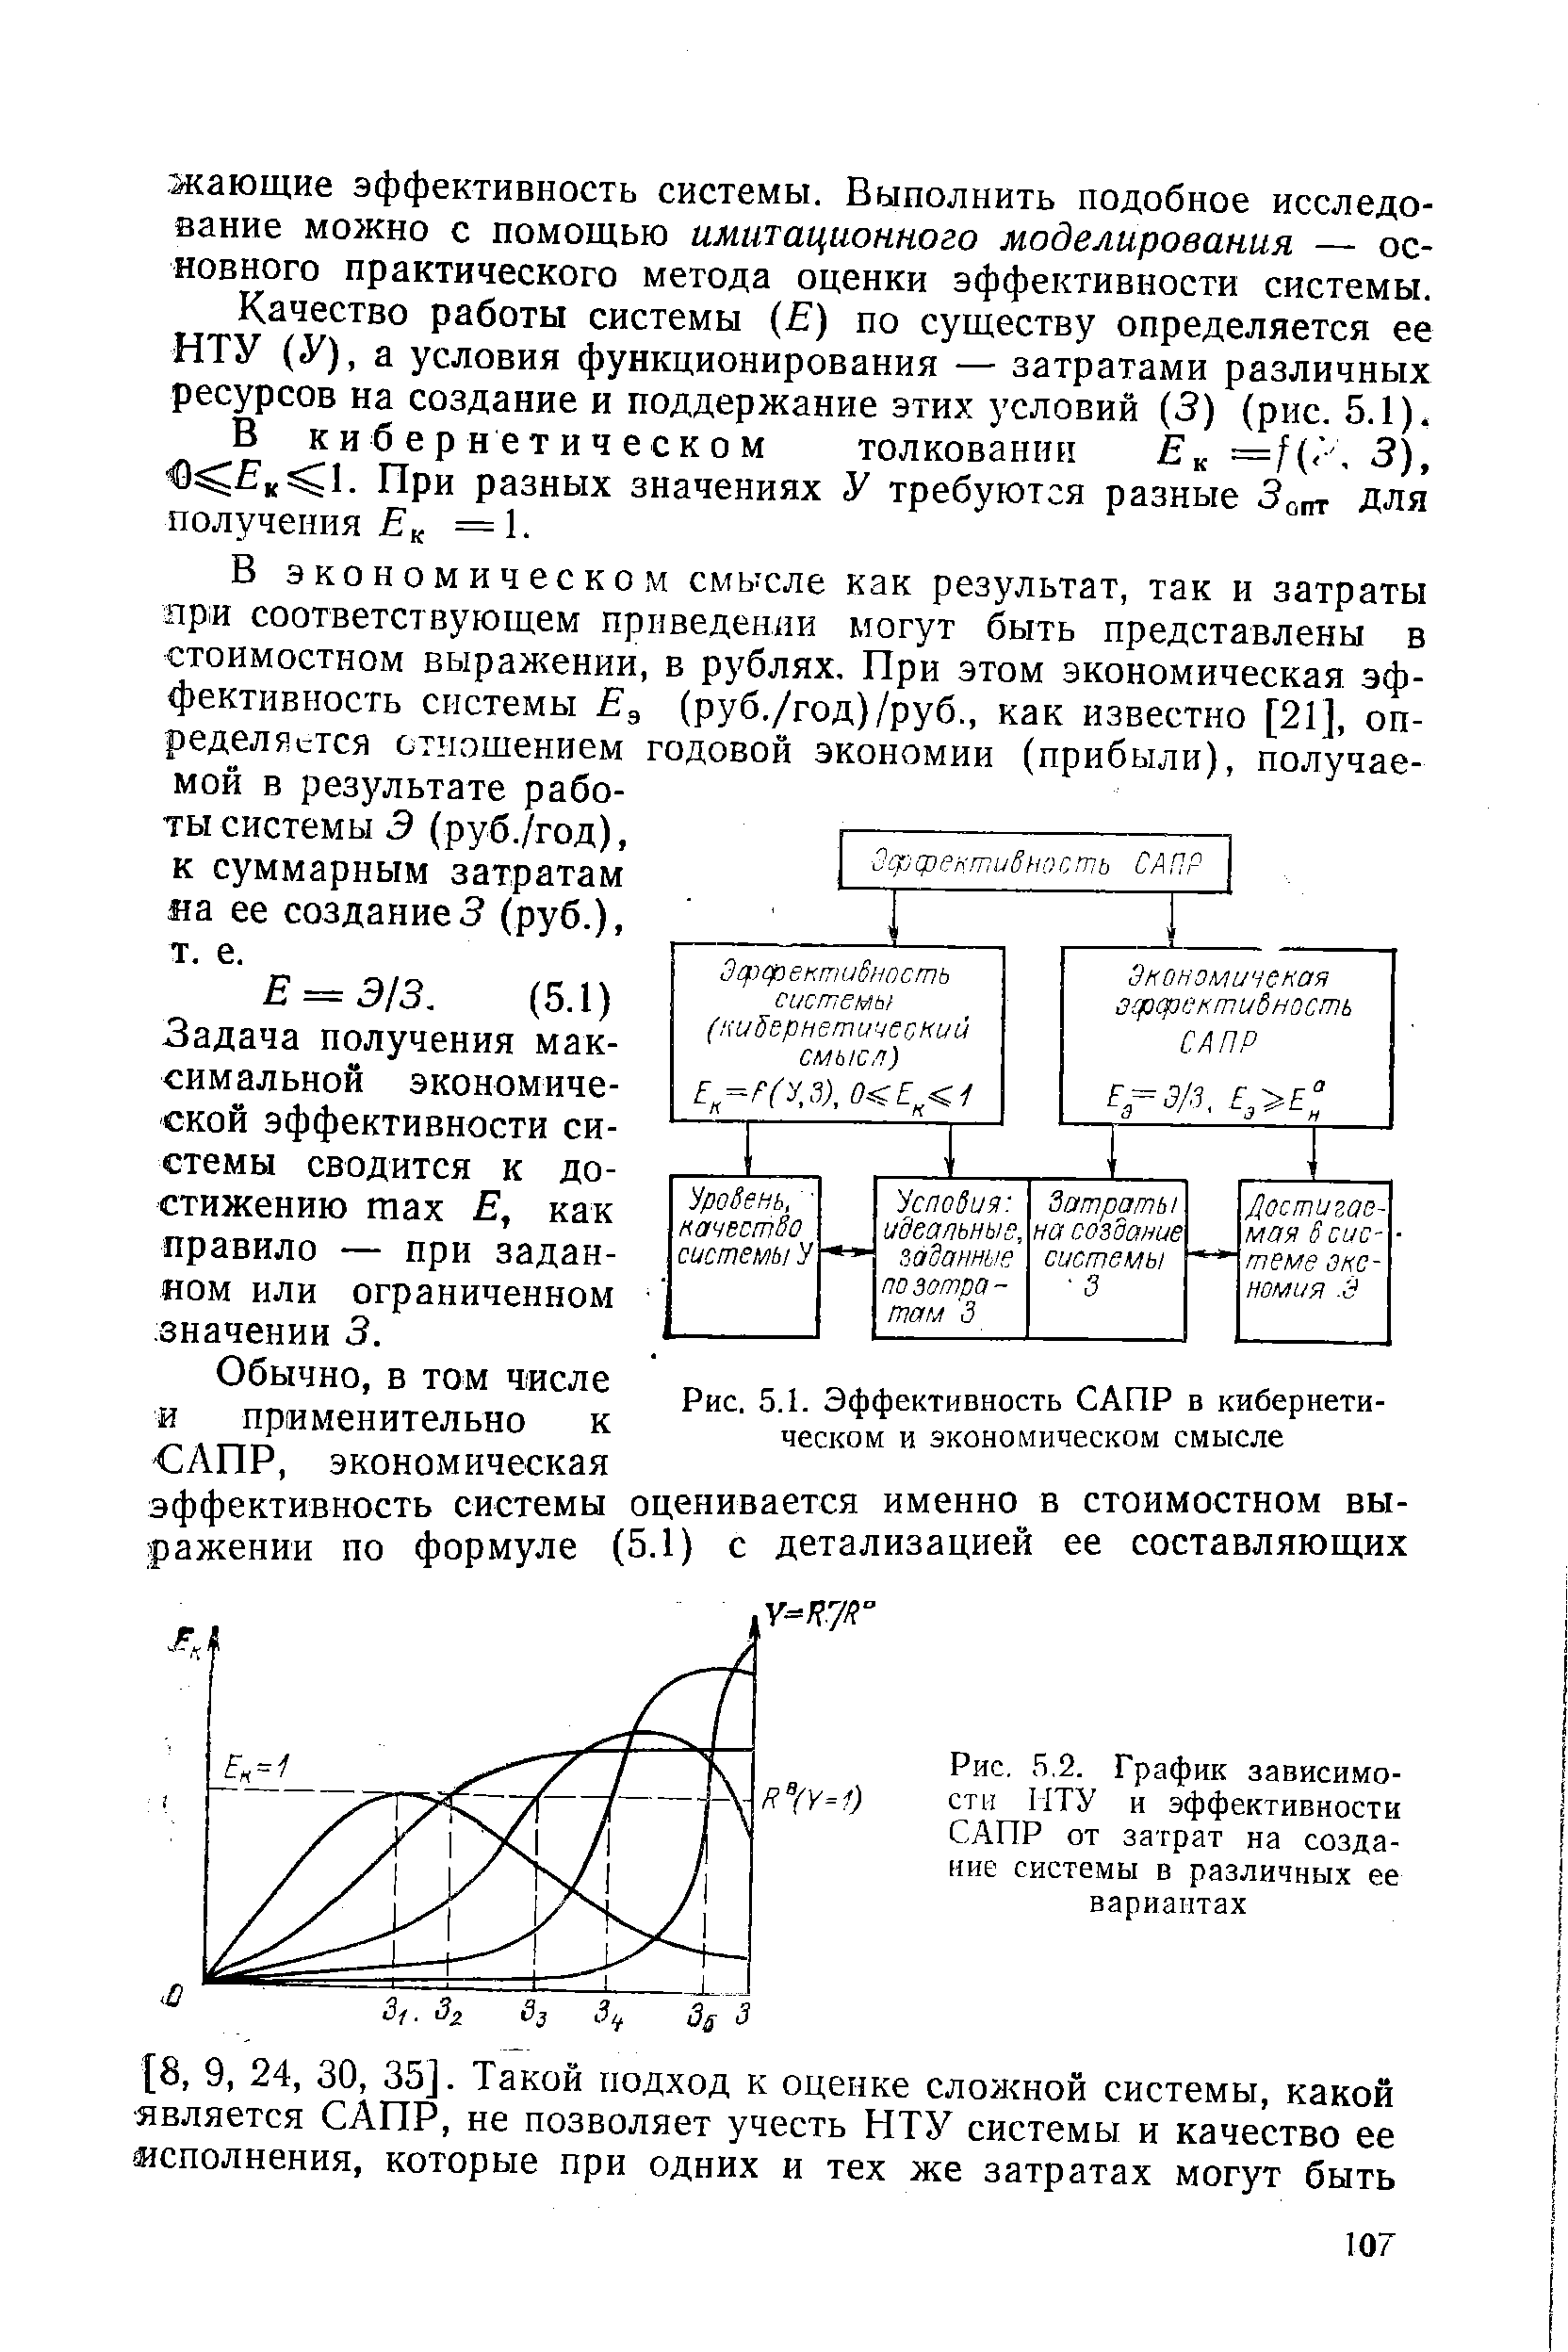 Рис. 5.2. График зависимости МТУ и эффективности САПР от затрат на <a href="/info/193035">создание системы</a> в различных ее вариантах
